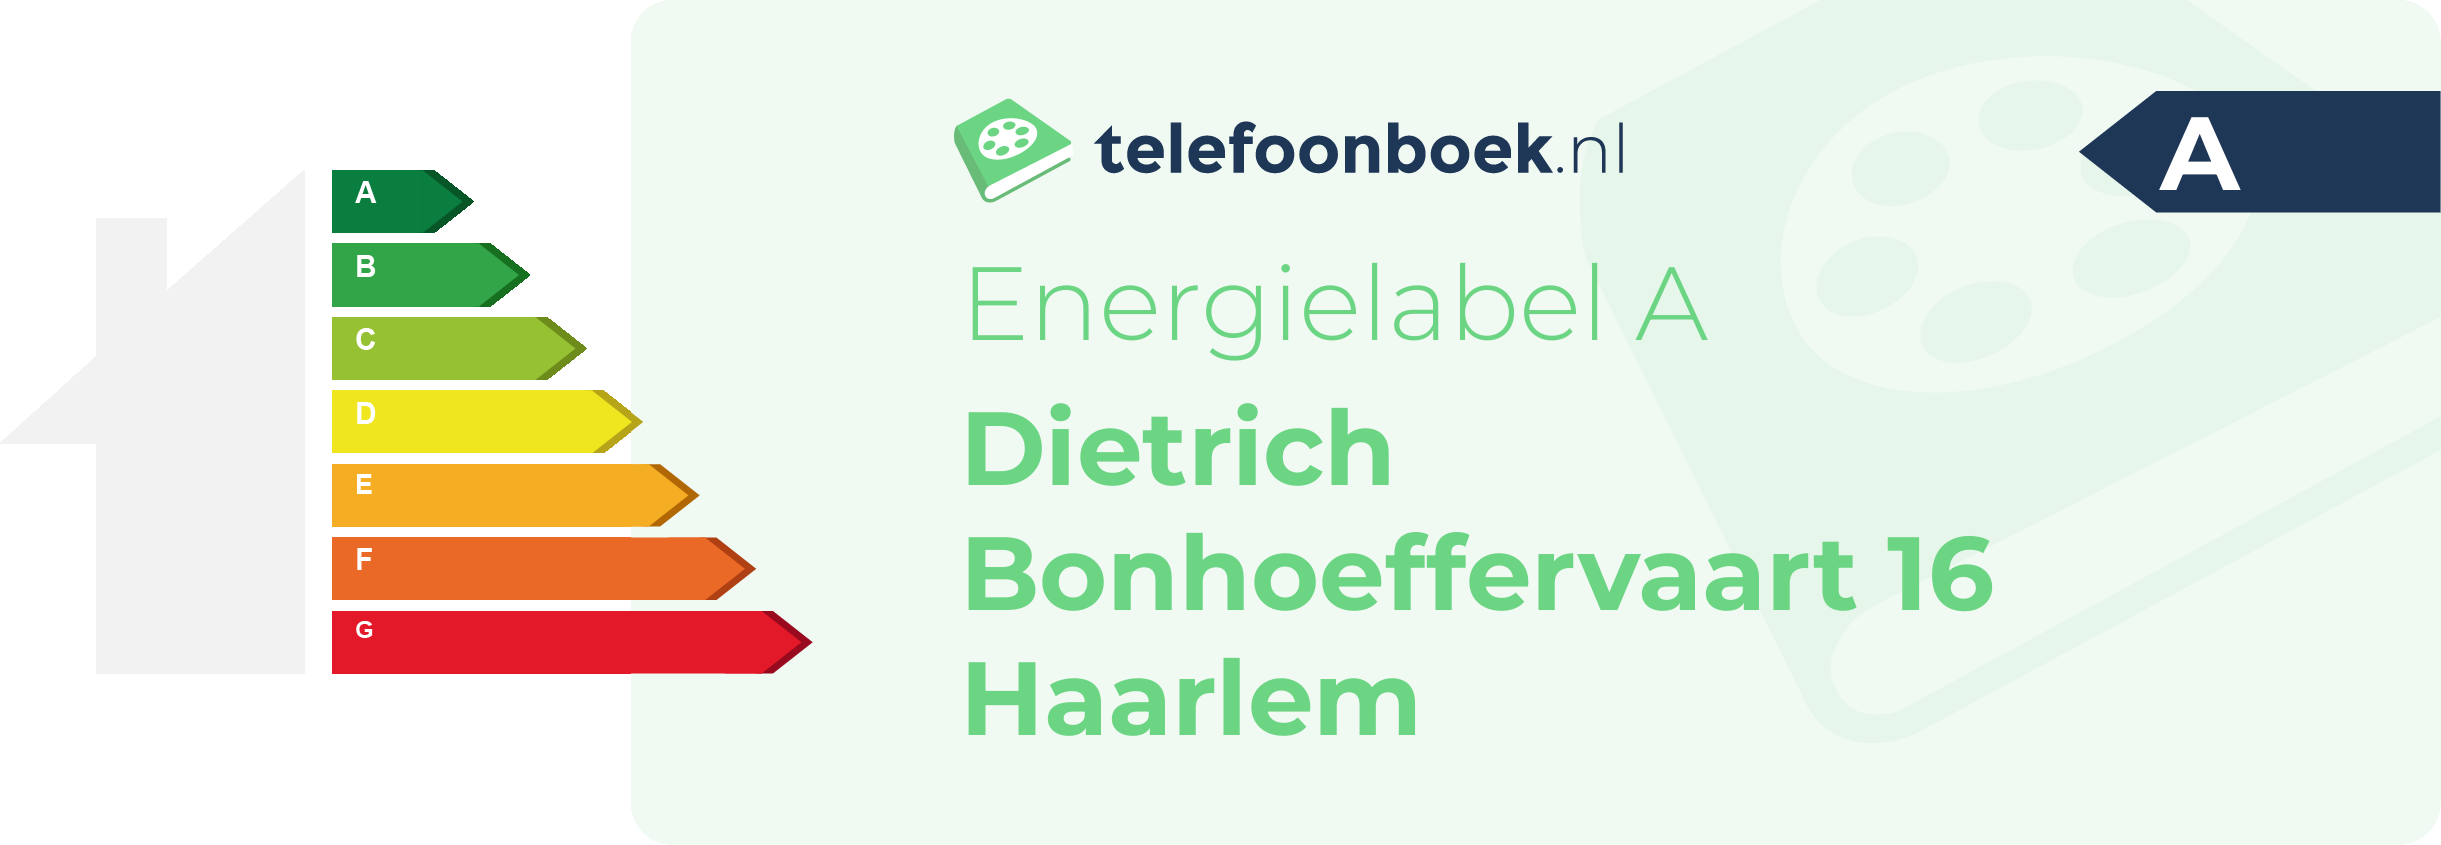 Energielabel Dietrich Bonhoeffervaart 16 Haarlem